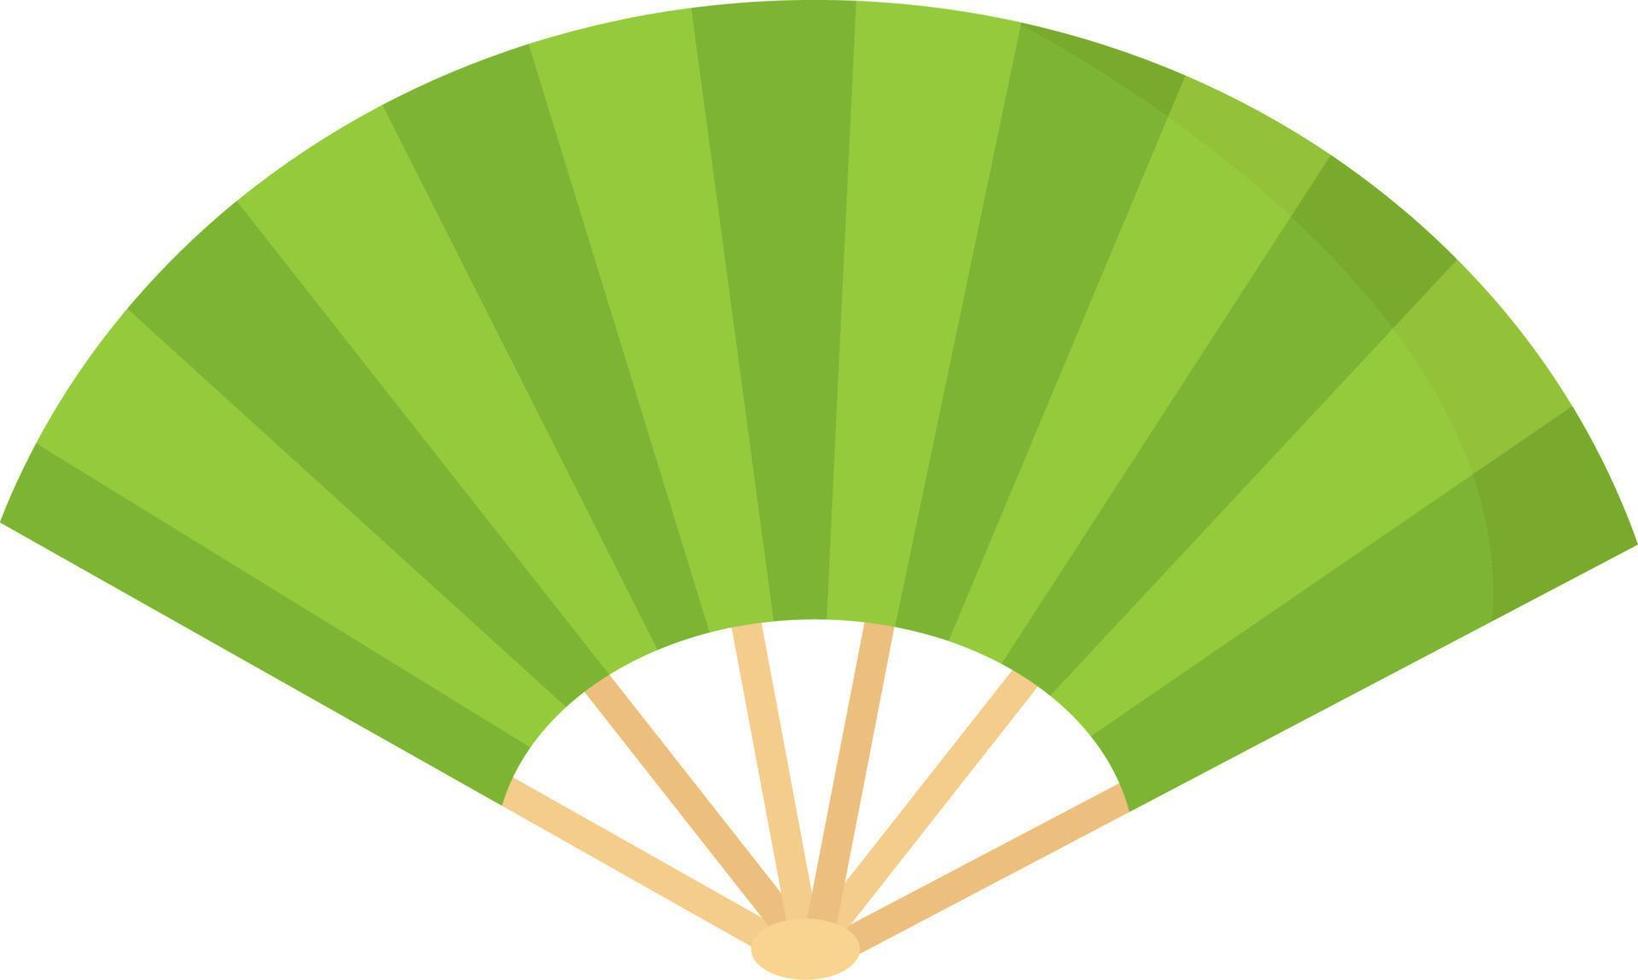 grön fläkt, illustration, vektor på vit bakgrund.